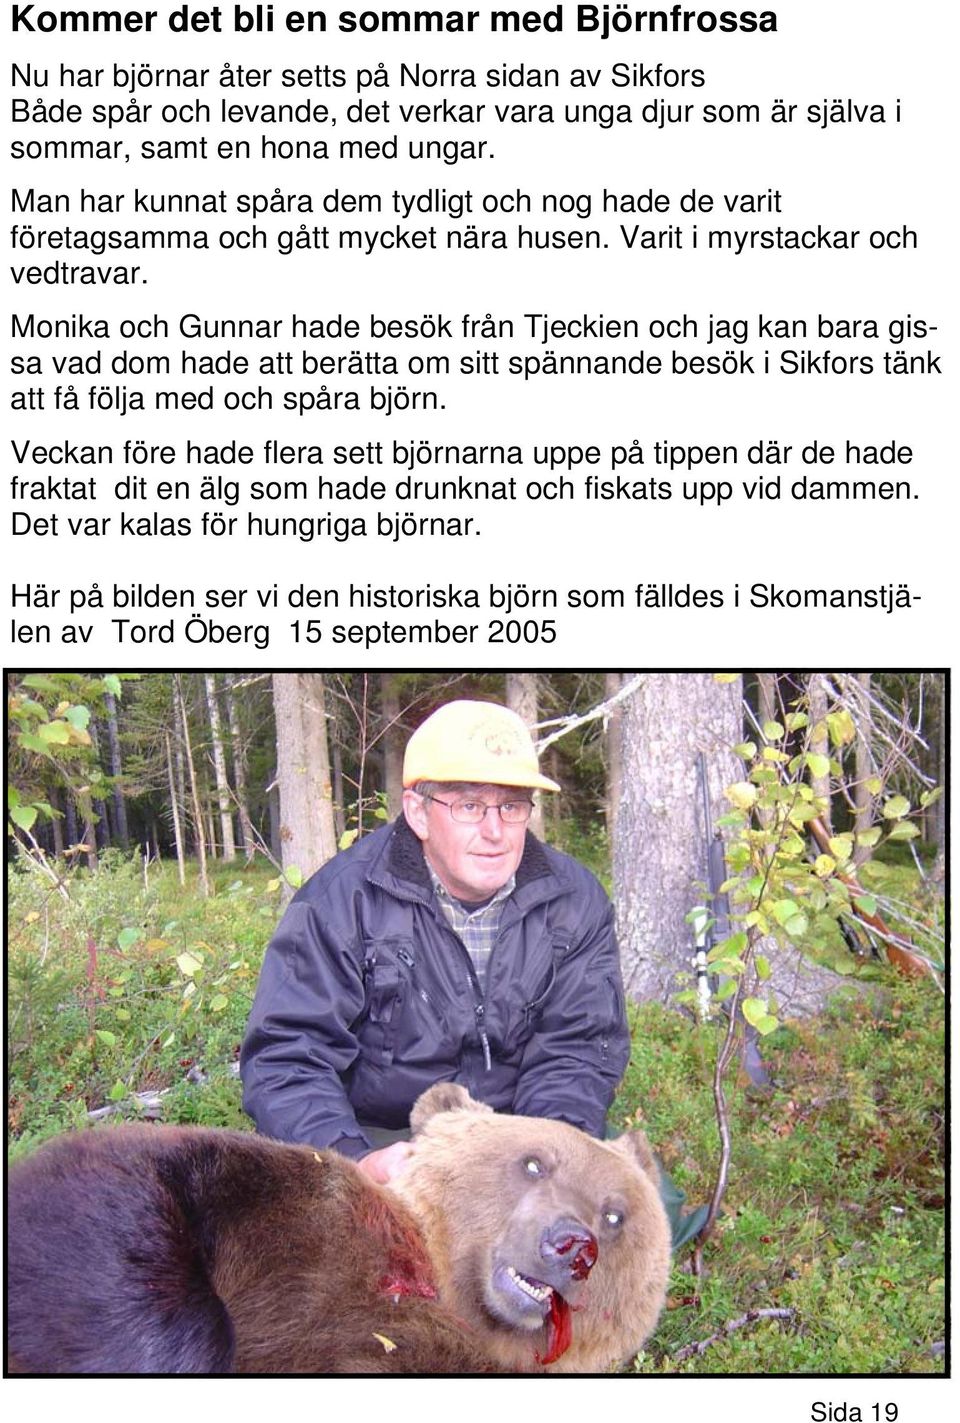 Monika och Gunnar hade besök från Tjeckien och jag kan bara gissa vad dom hade att berätta om sitt spännande besök i Sikfors tänk att få följa med och spåra björn.